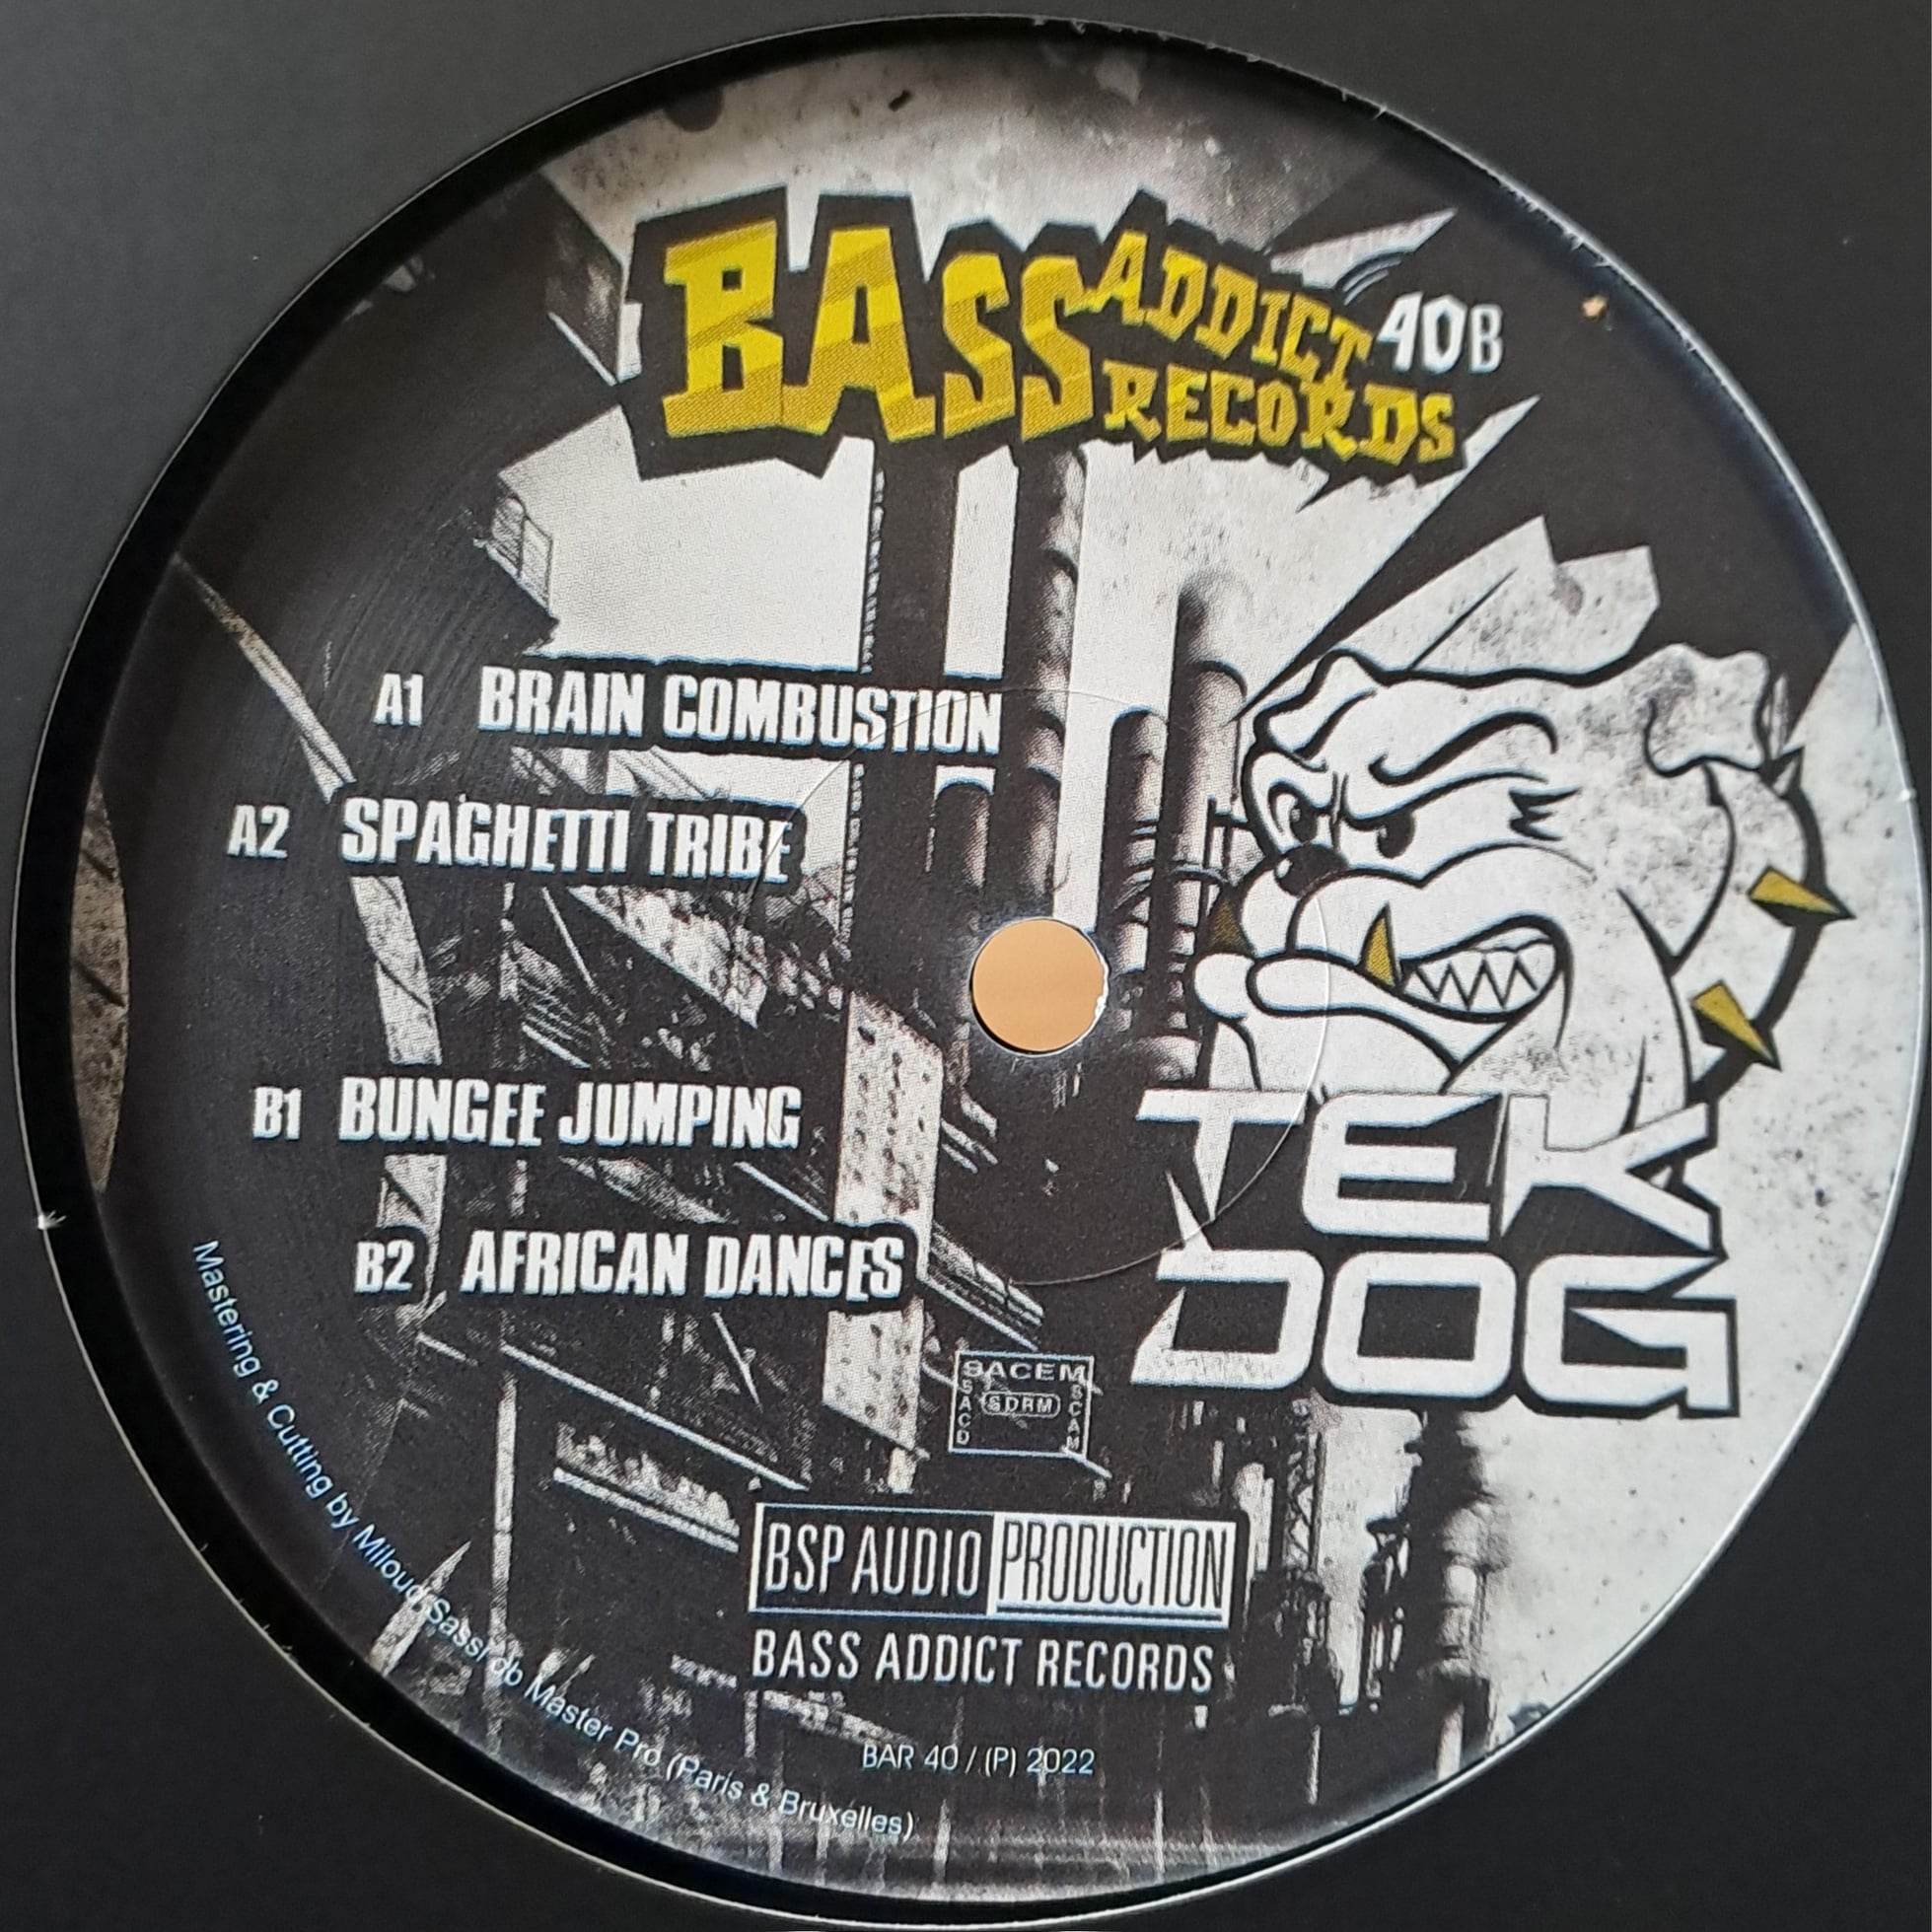 Bass Addict 40 (toute dernière copie en stock) - vinyle Ragga